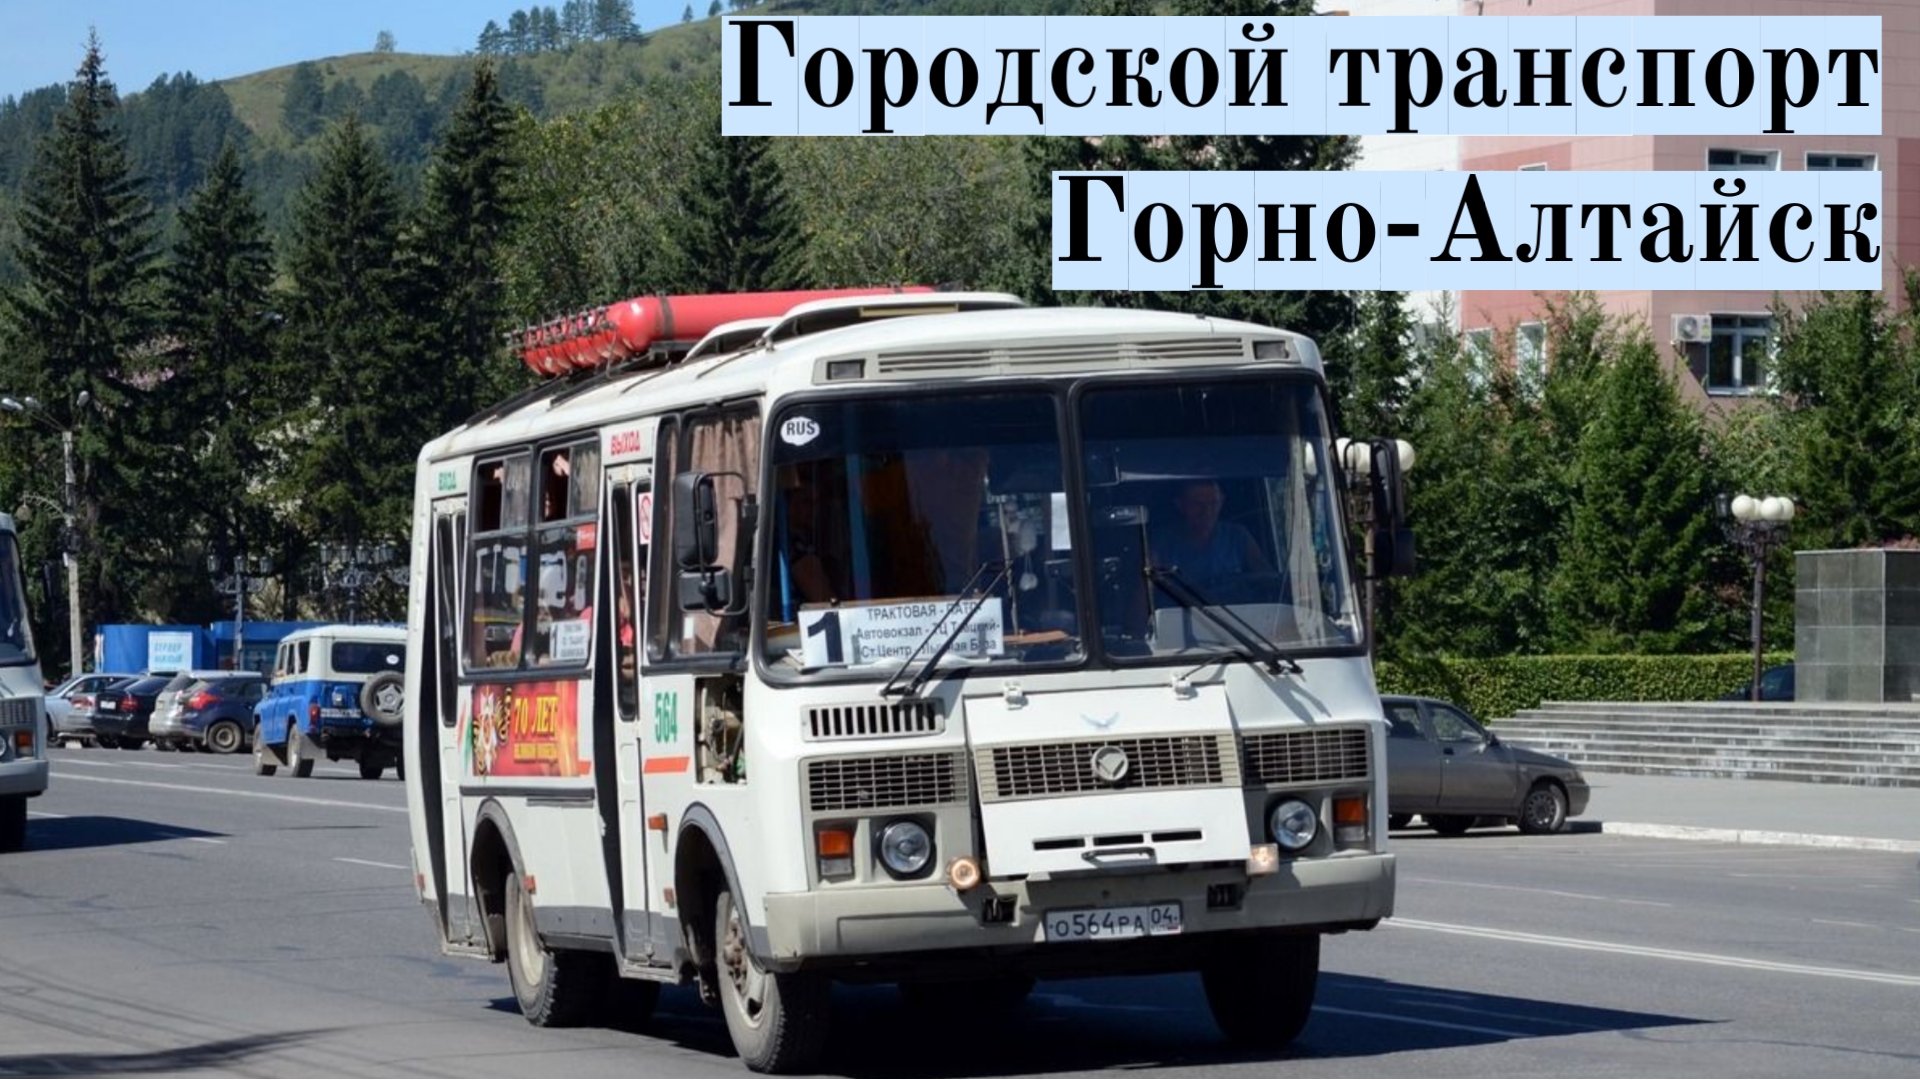 Кемерово горно алтайск автобус. Автобус Горно-Алтайск. Горный транспорт.